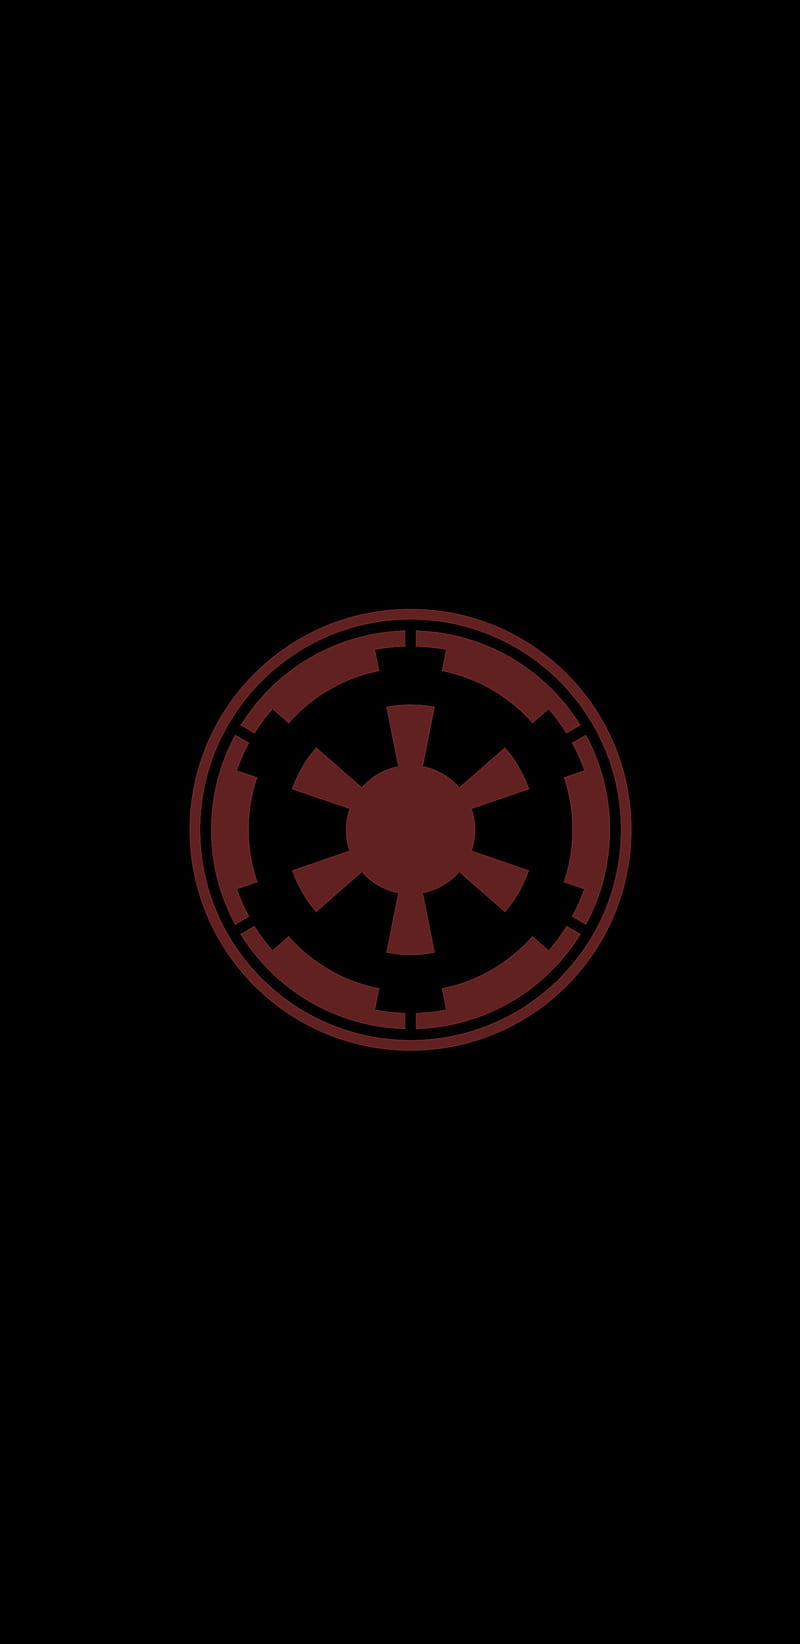 30+] Star Wars Imperial Logo Wallpapers - WallpaperSafari